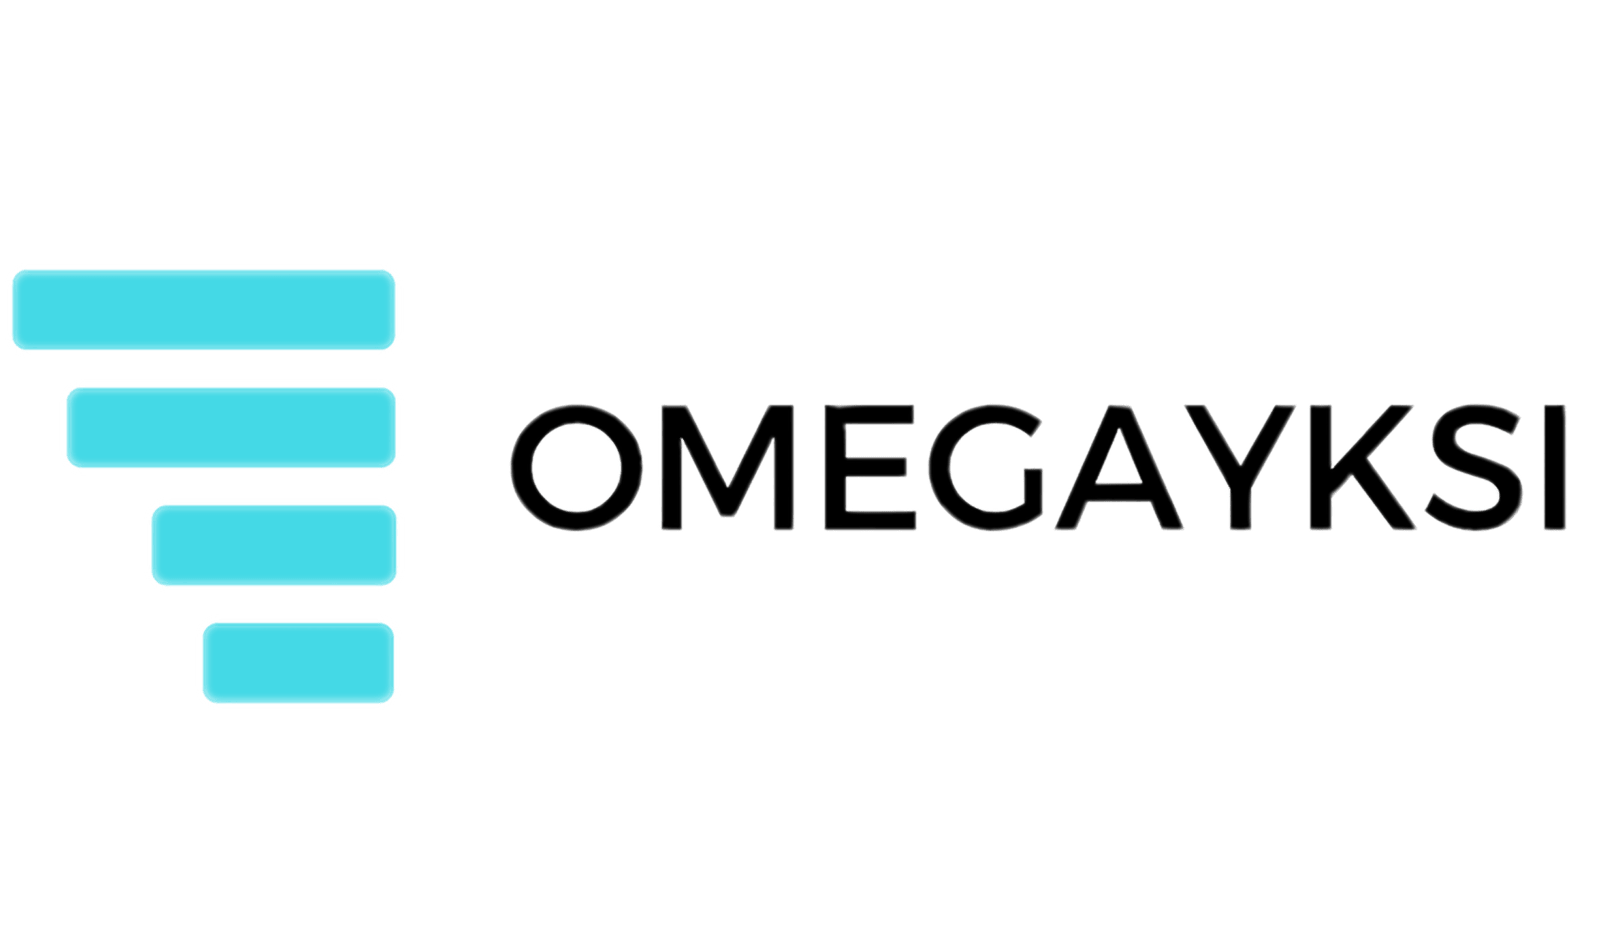 Omegayksi Oy